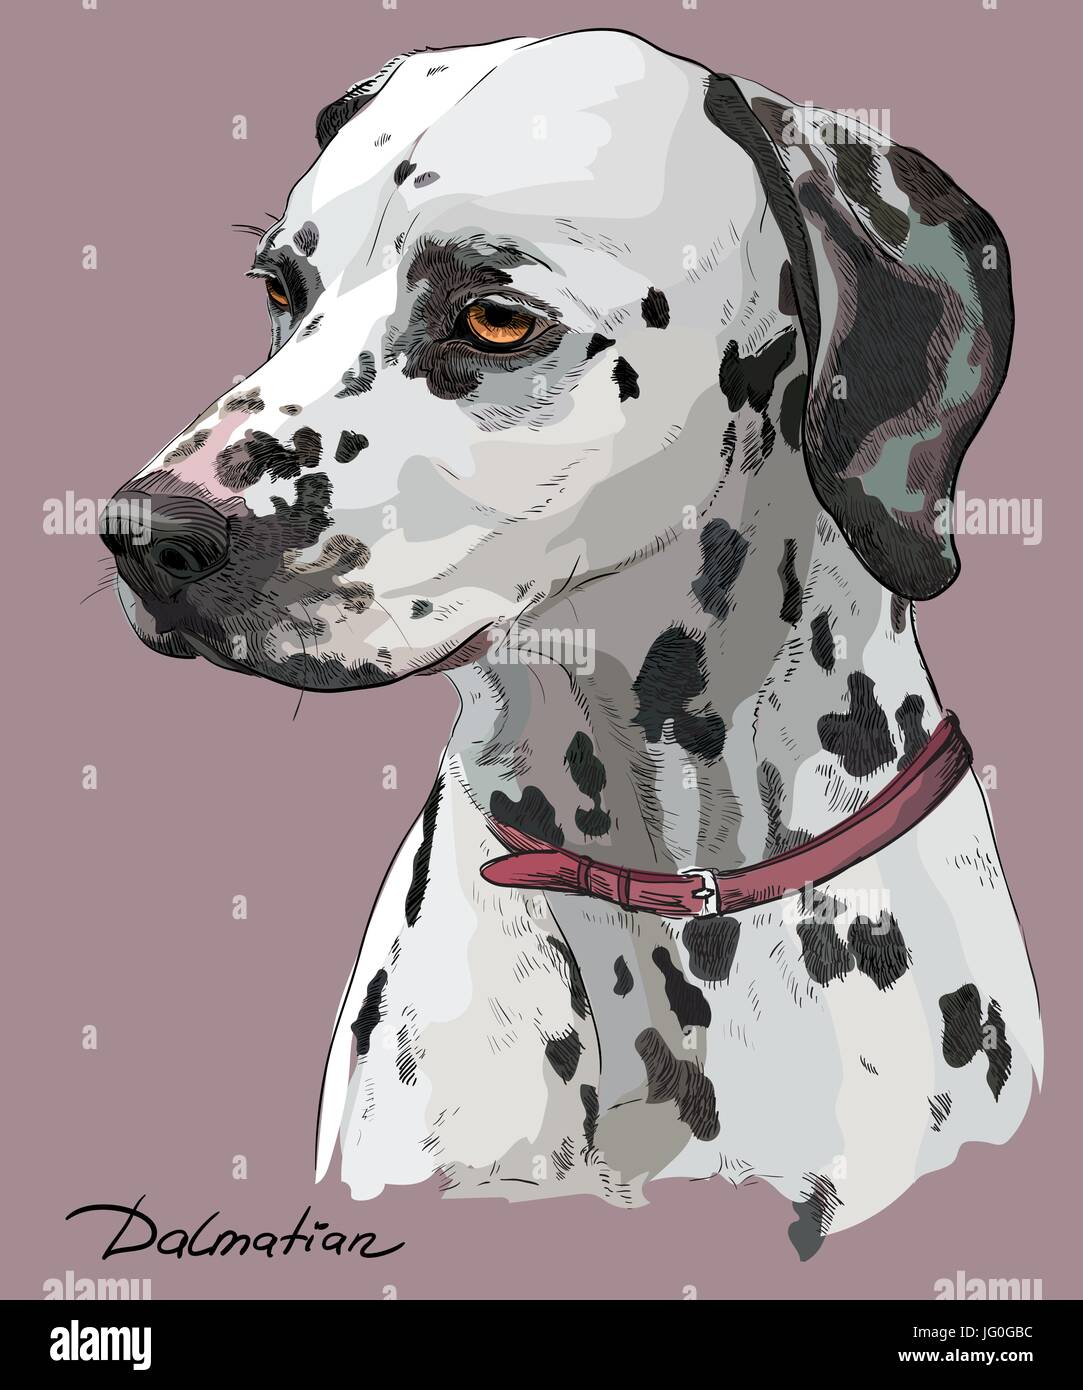 Coloful Hand Zeichnung Vektor Porträt der Dalmatiner Hund im Profil auf rosa Hintergrund Stock Vektor